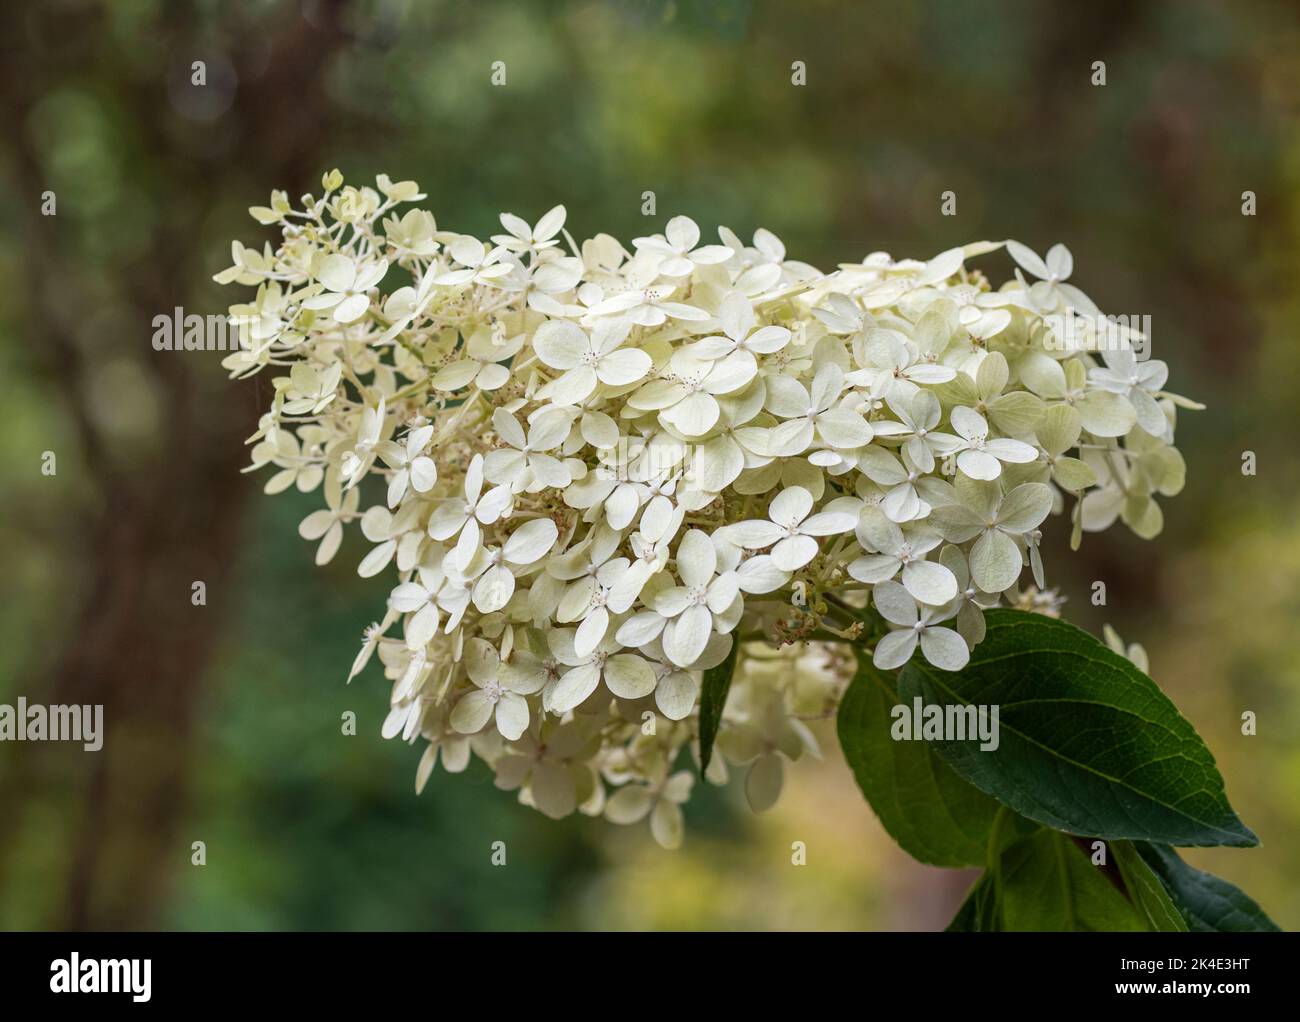 Eine einzige Blüte der Hydrangea Paniculata, Limettenlicht. Die Blüte hat viele kleine Blüten, die das ganze bilden. Stockfoto